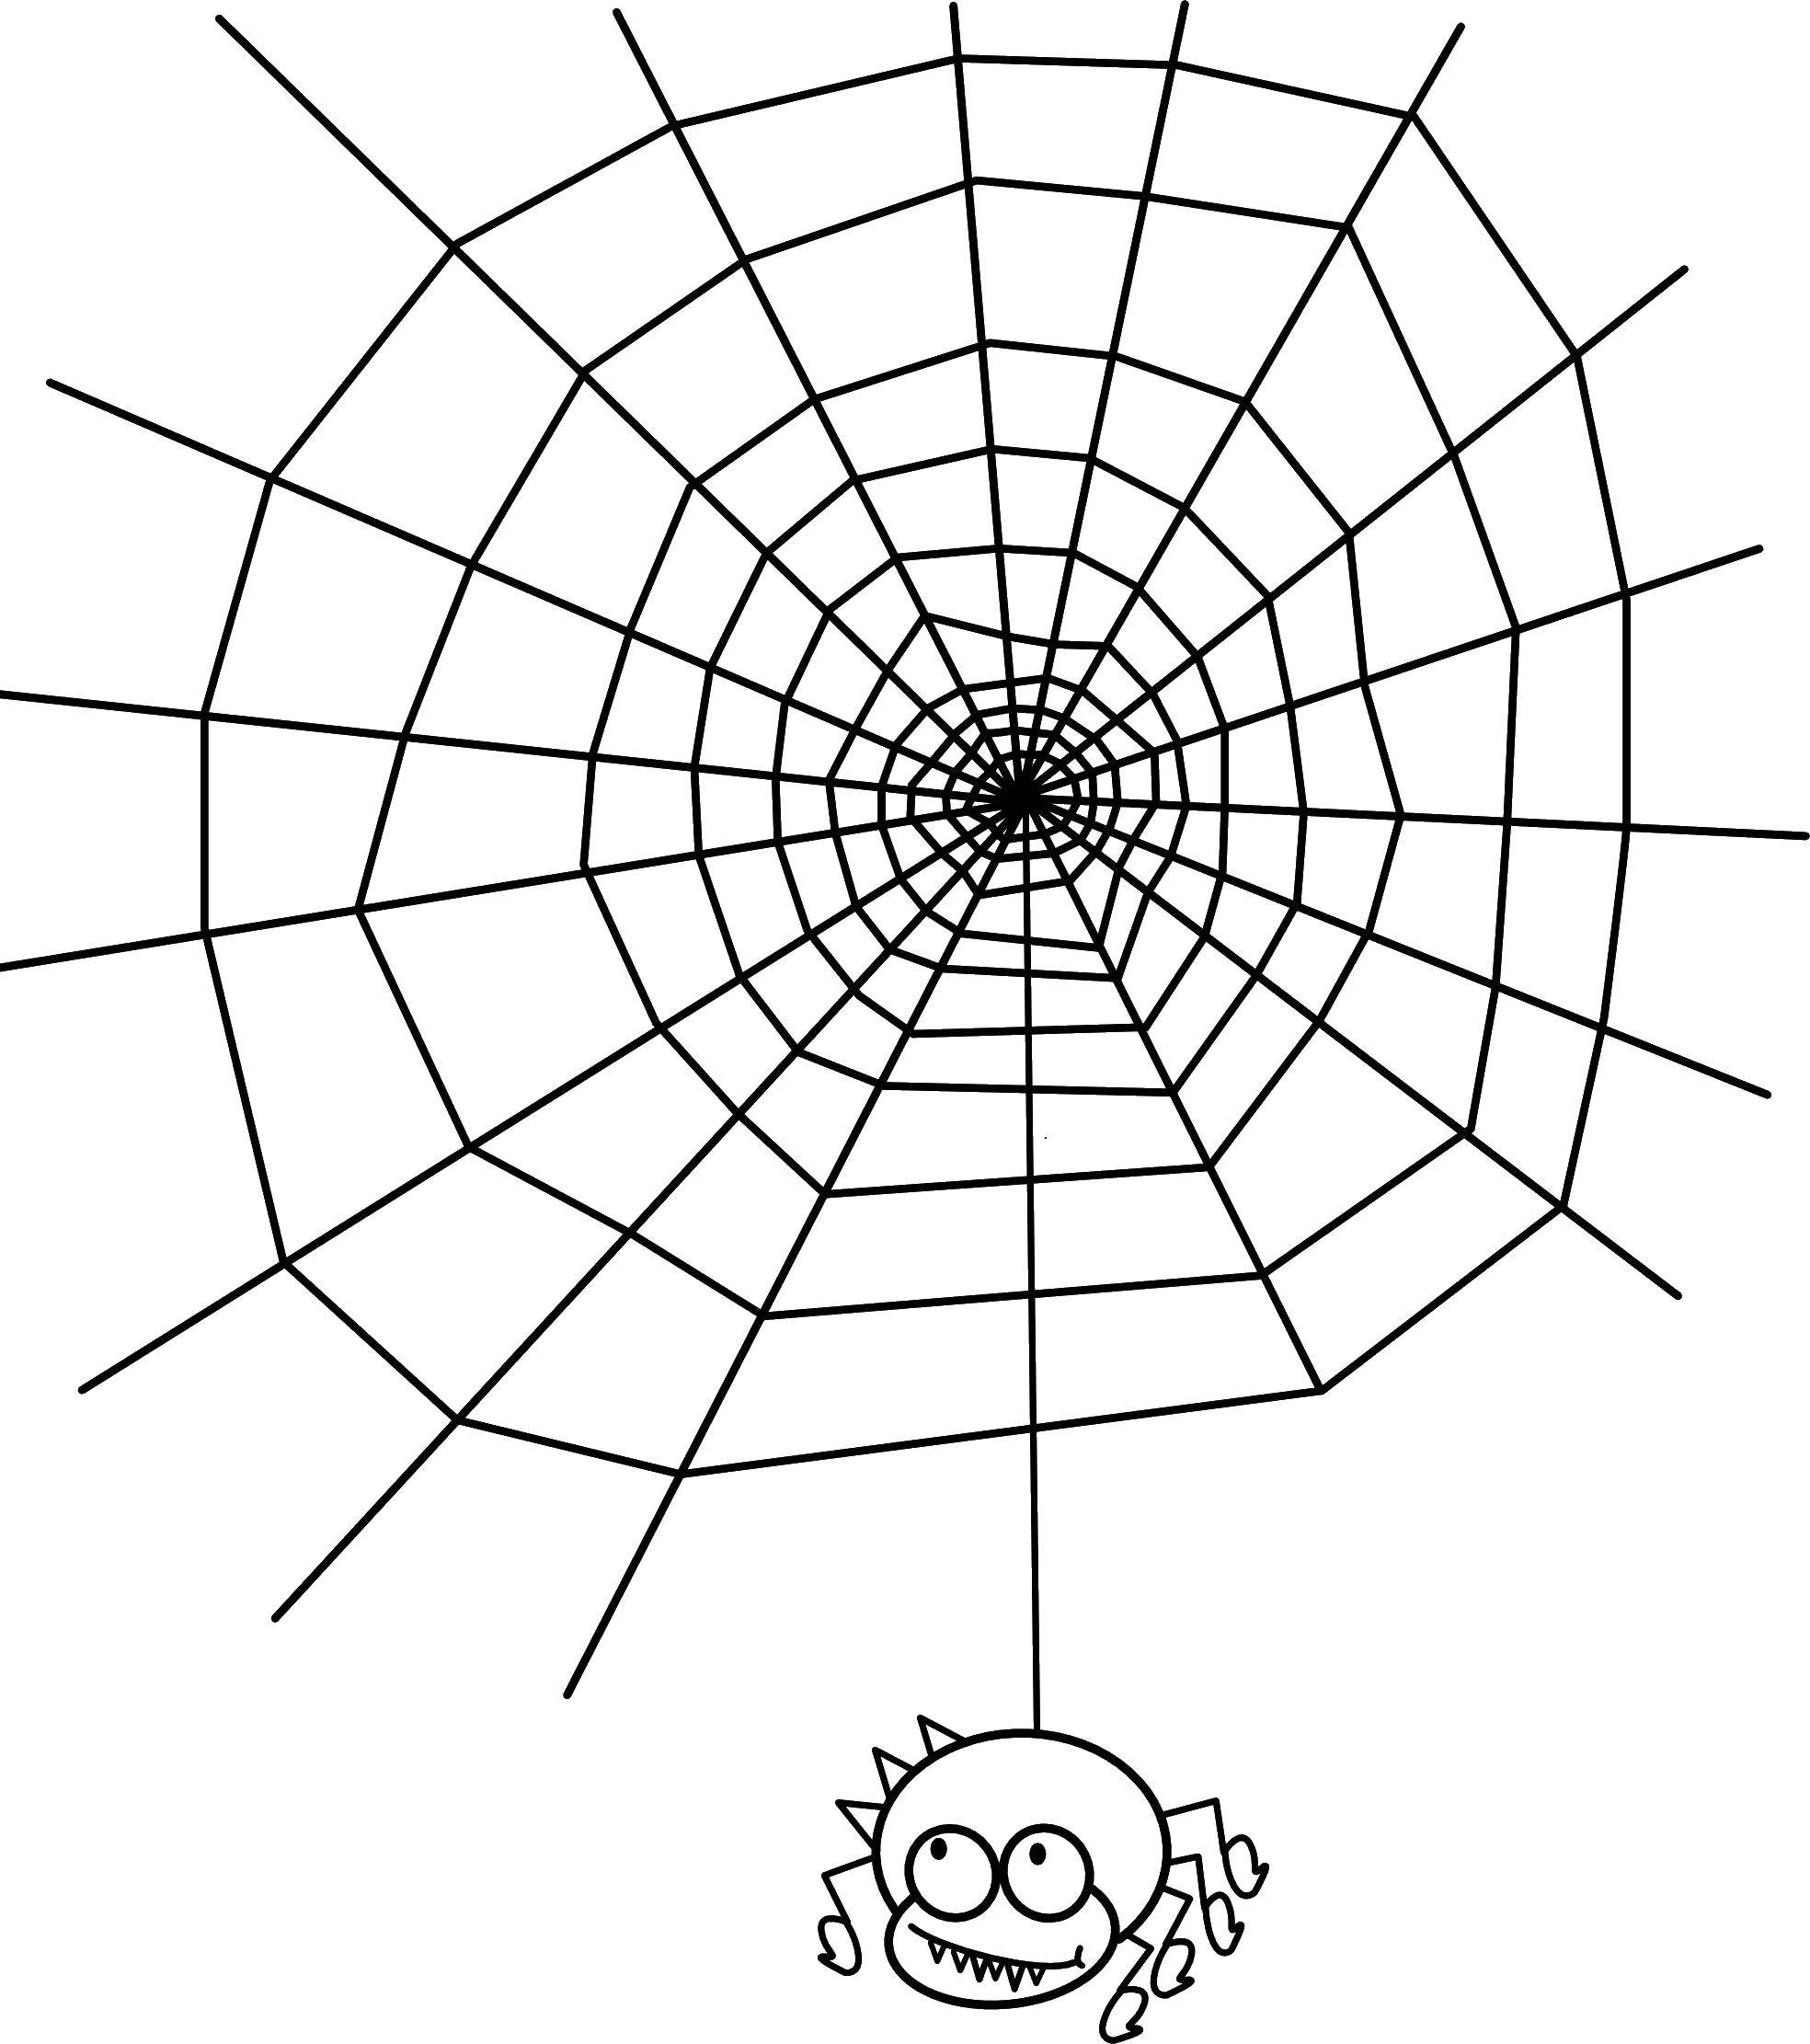   Паучок на паутине